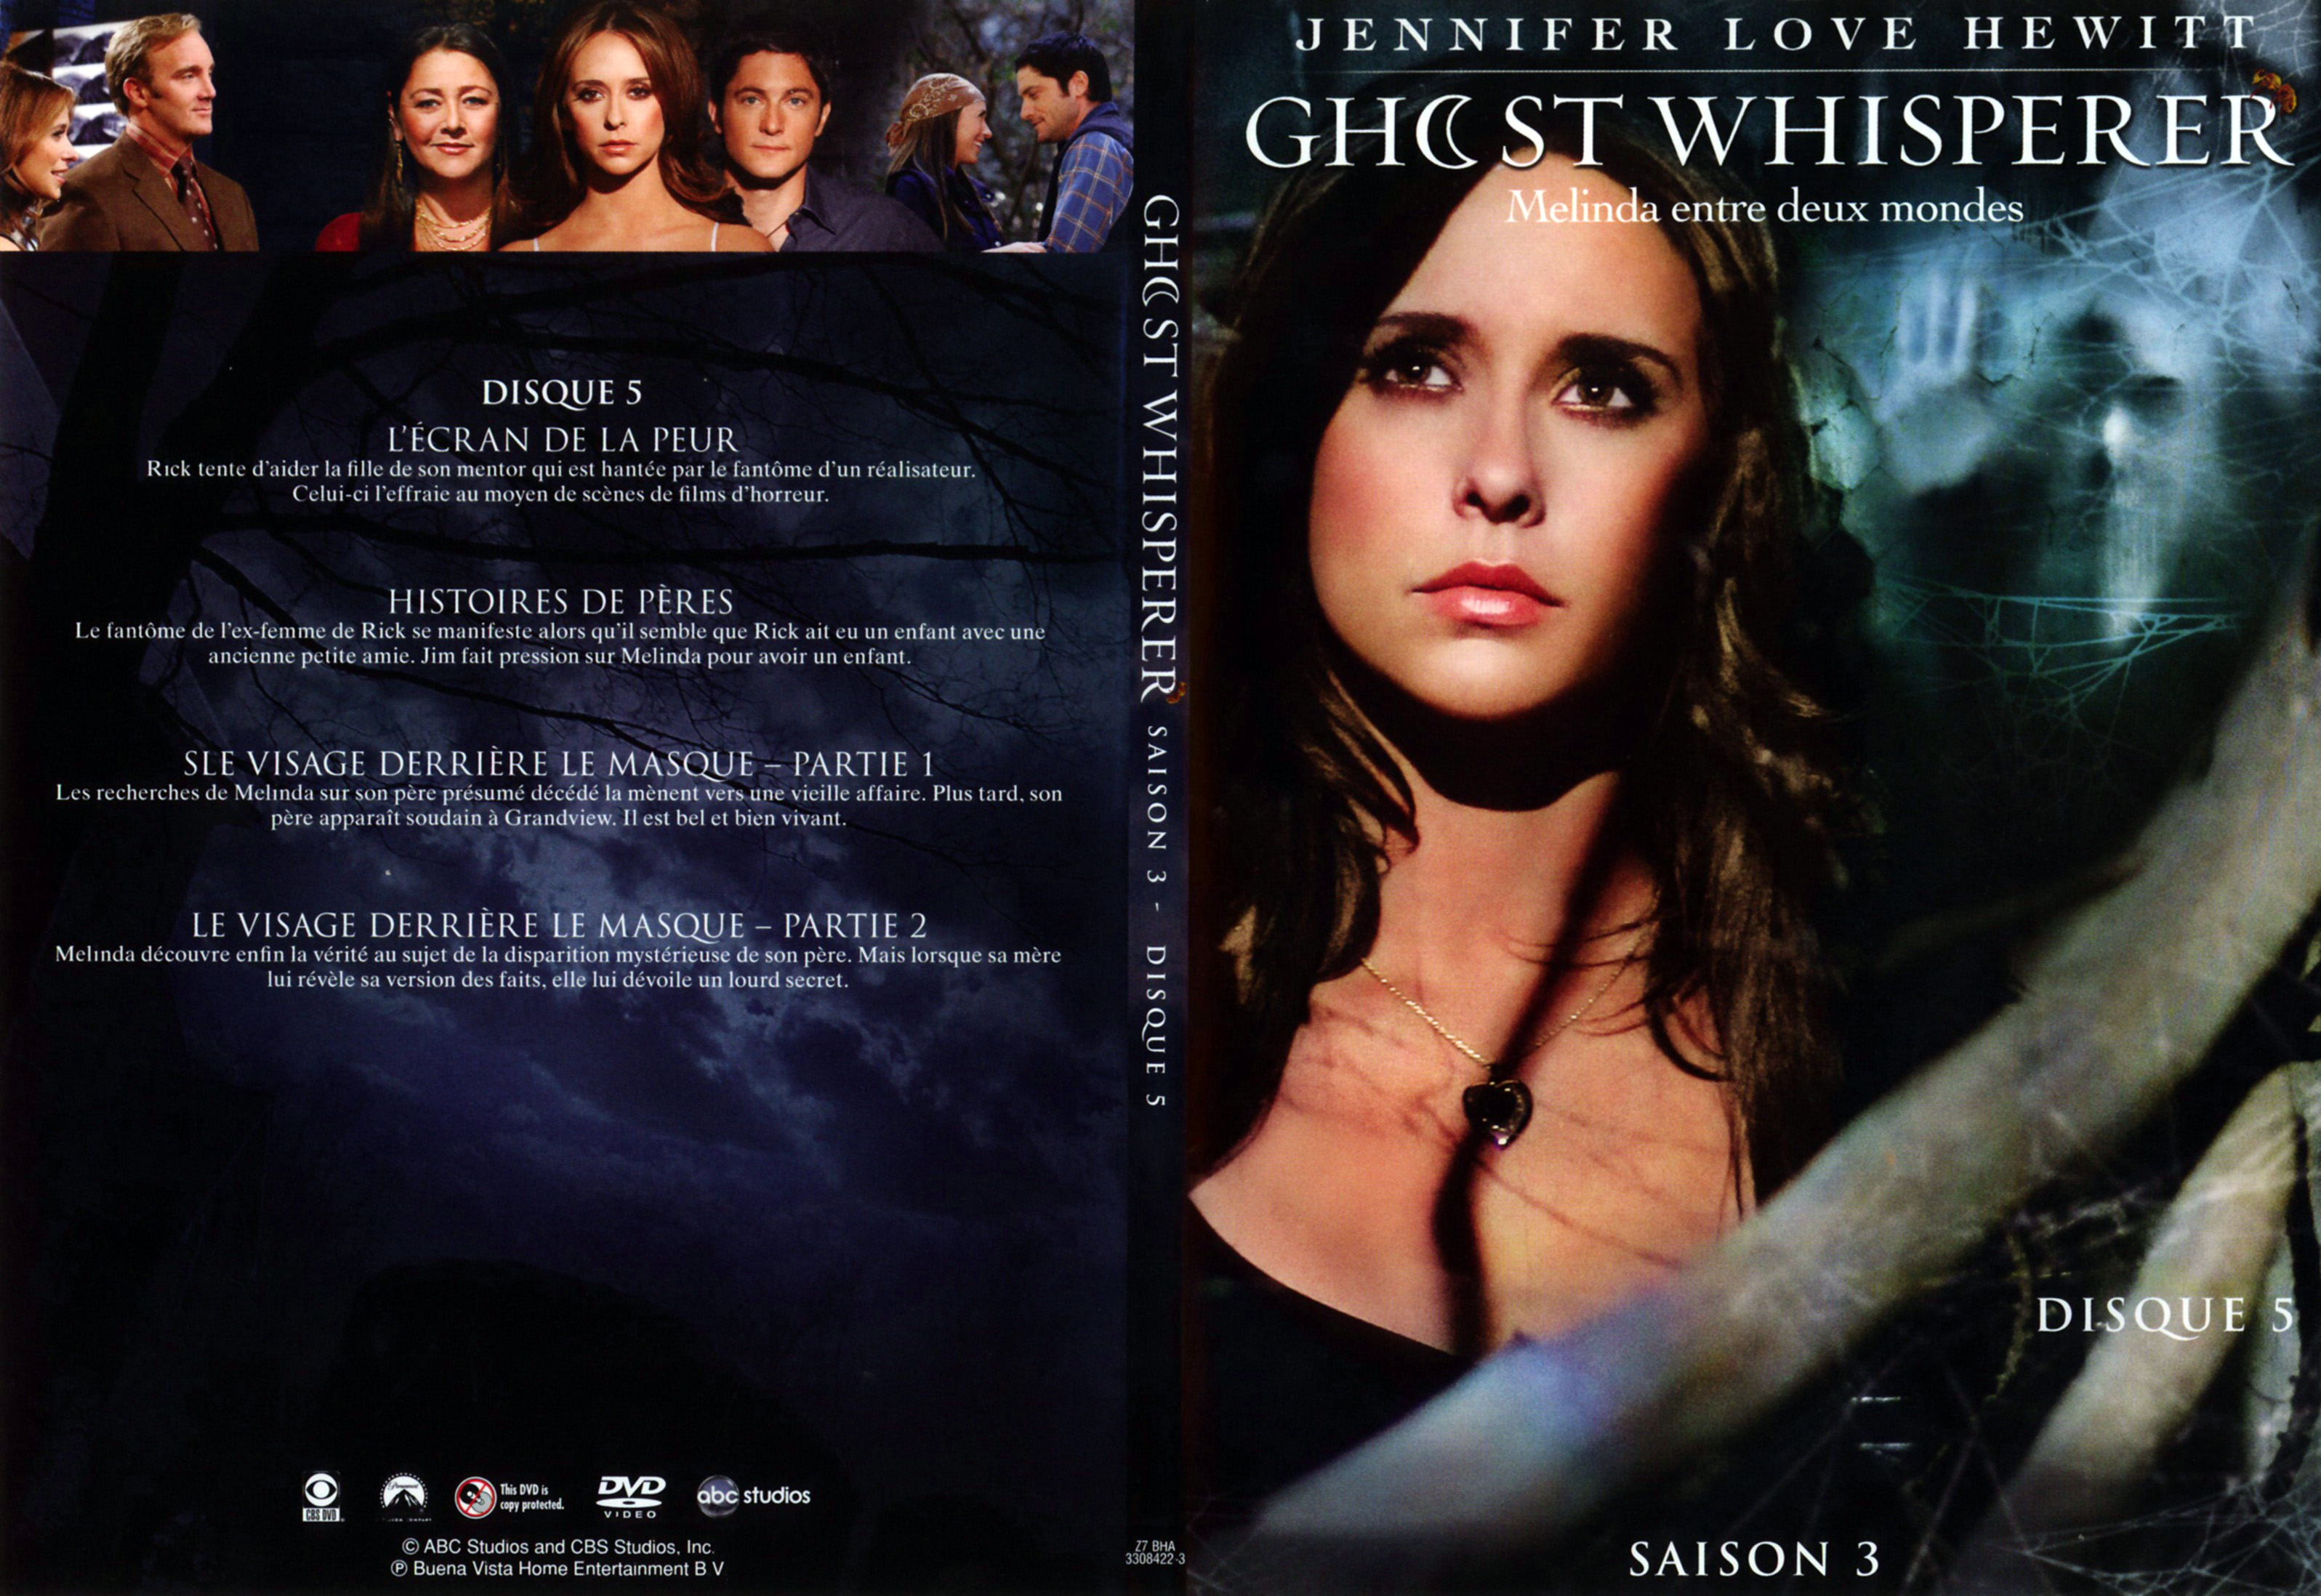 Jaquette DVD Ghost whisperer Saison 3 DVD 3